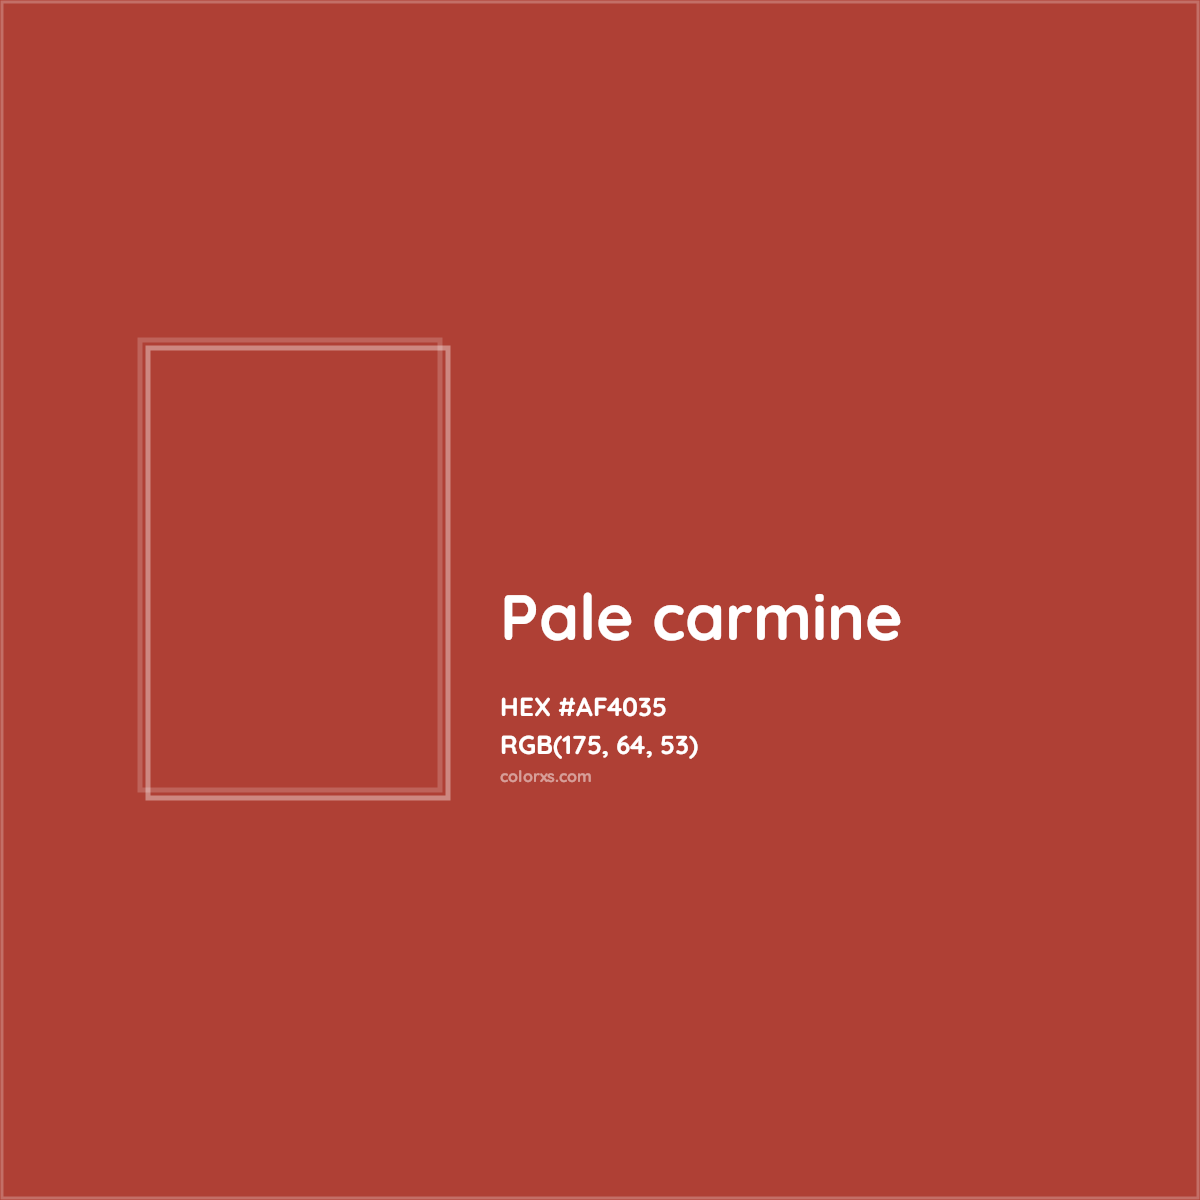 HEX #AF4035 Pale carmine Color - Color Code